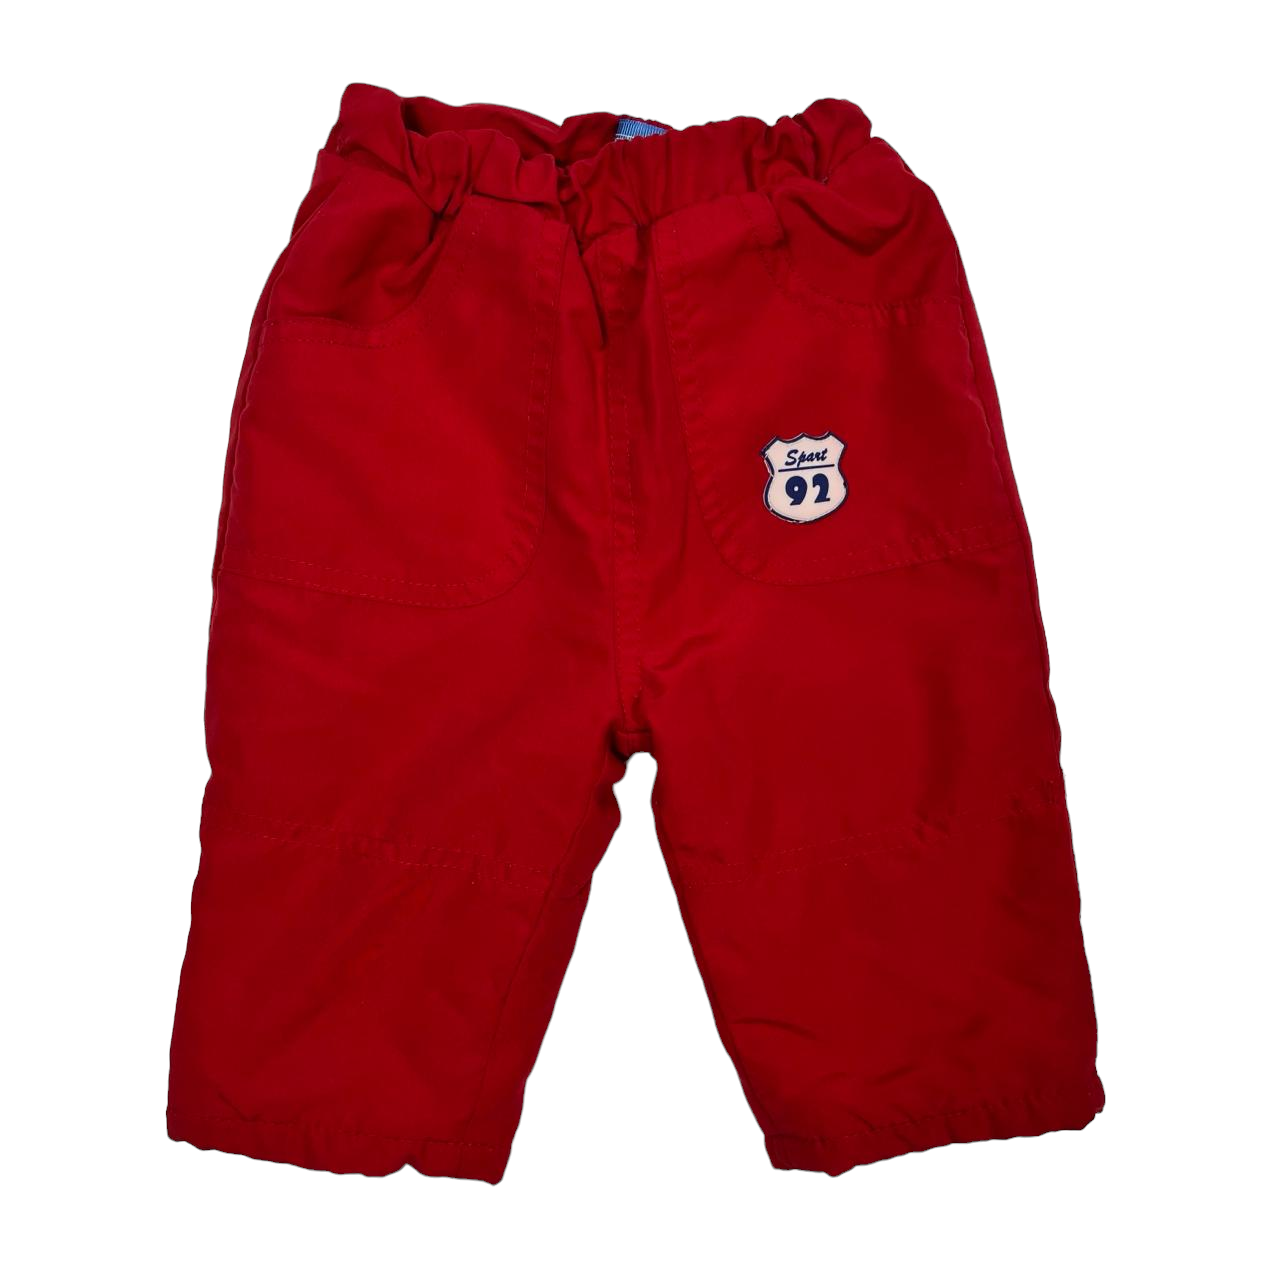 Pantalon rojo termico forrado sport 92